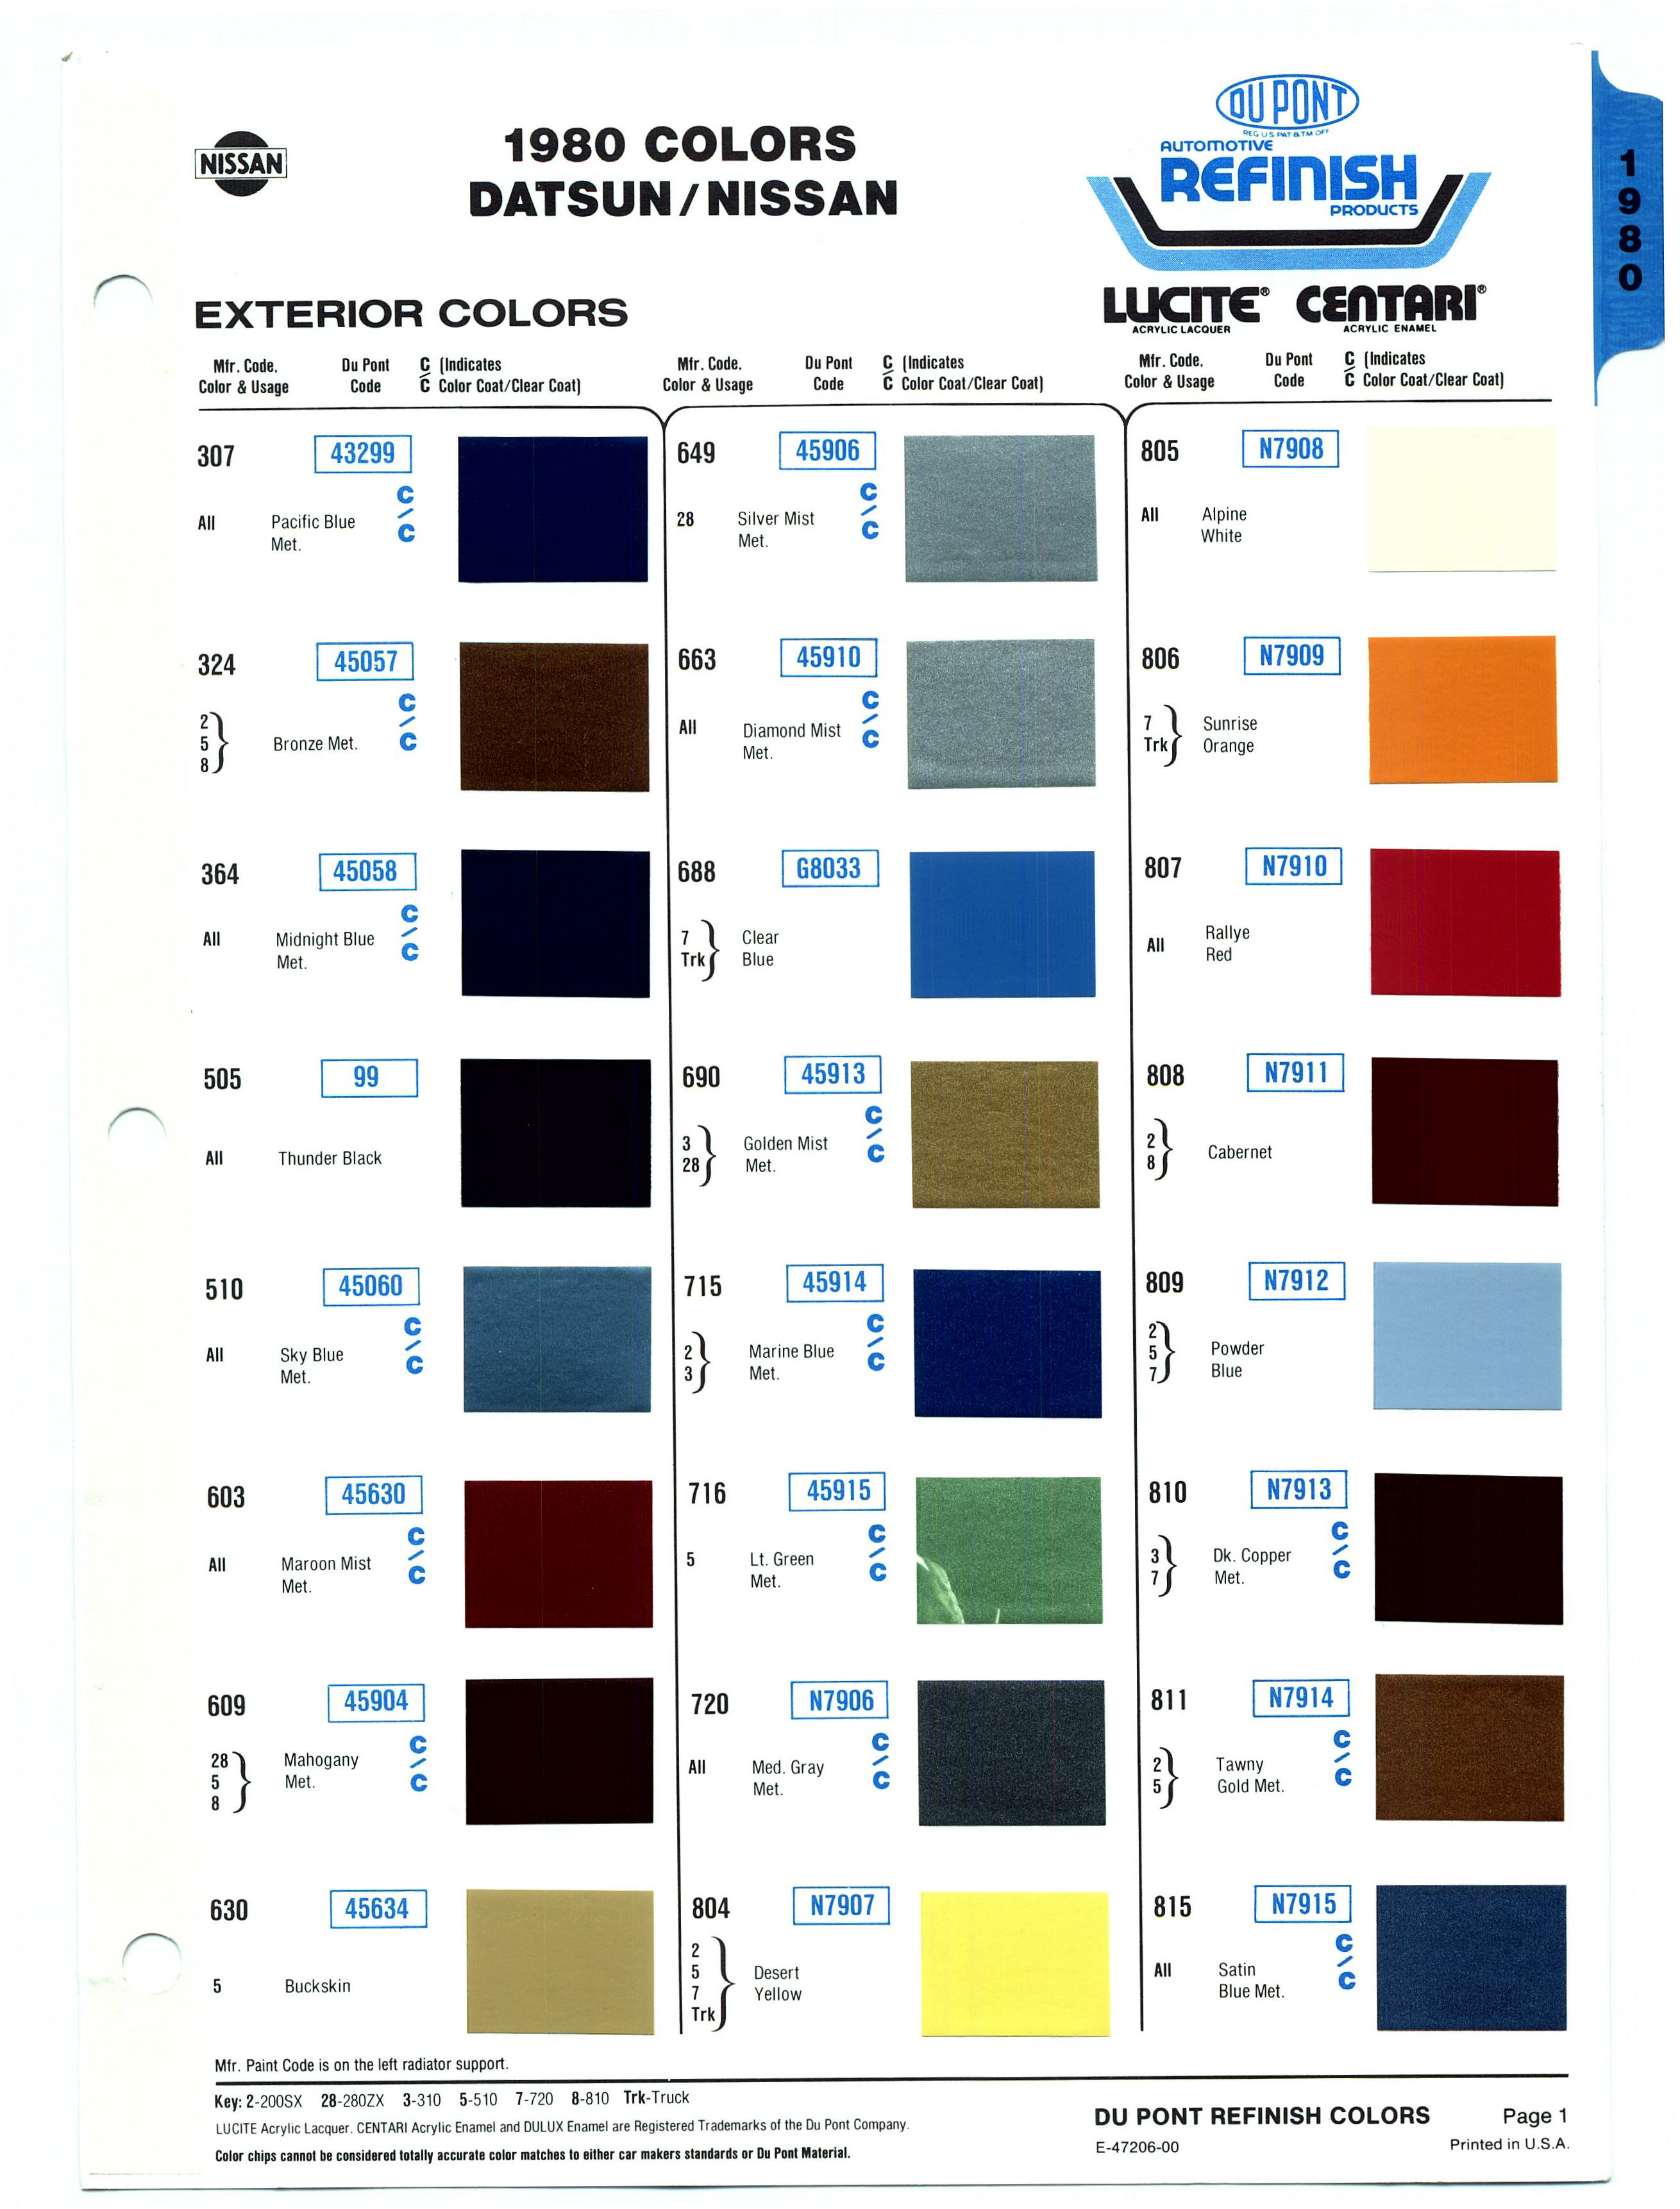 Nissan colour code #2